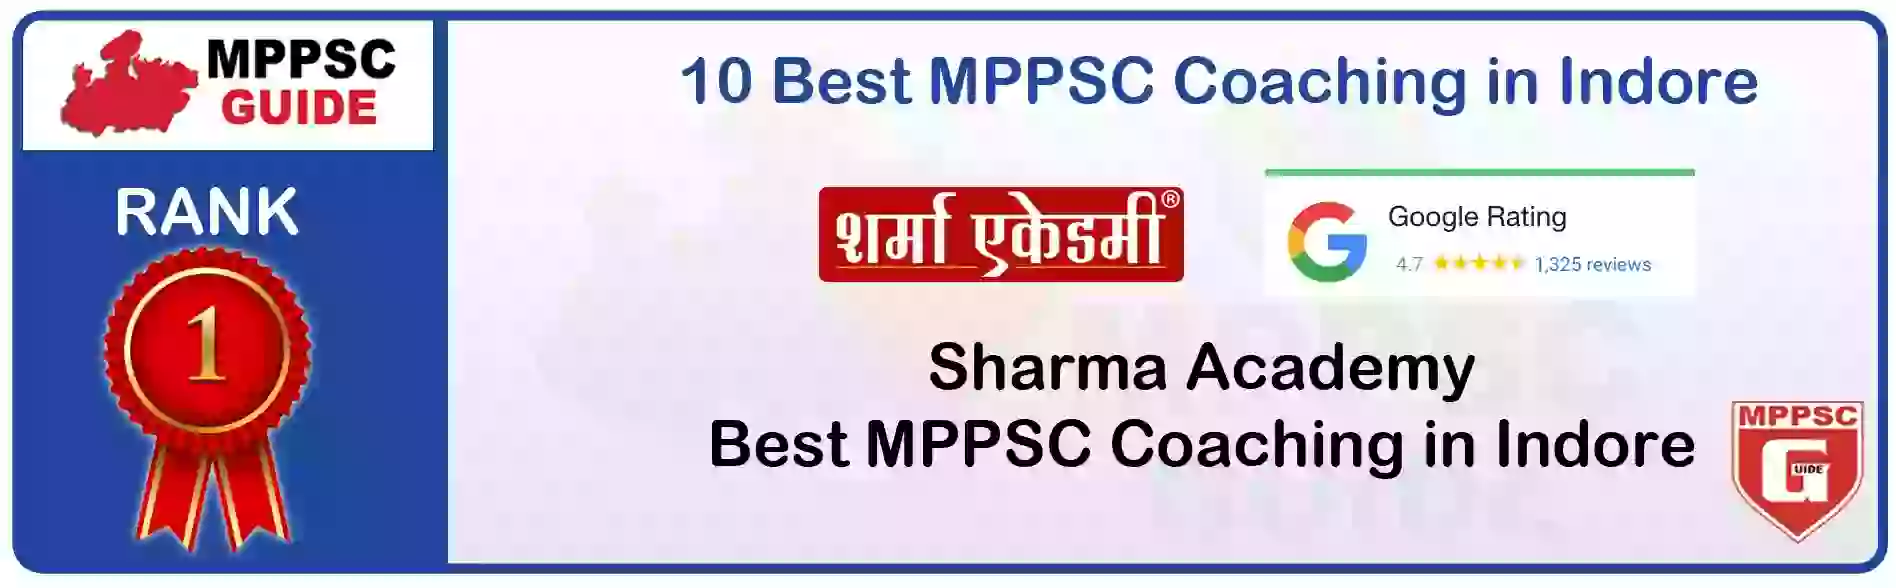 MPPSC Coaching in Ujjain, MPPSC Coaching Institute In Ujjain, Best MPPSC Coaching in Ujjain, Top 10 MPPSC Coaching In Ujjain, best mppsc coaching institute in ujjain, MPPSC Coaching Classes In Ujjain, MPPSC Online Coaching In Ujjain, mppsc coaching in Ujjain bhanwarkua